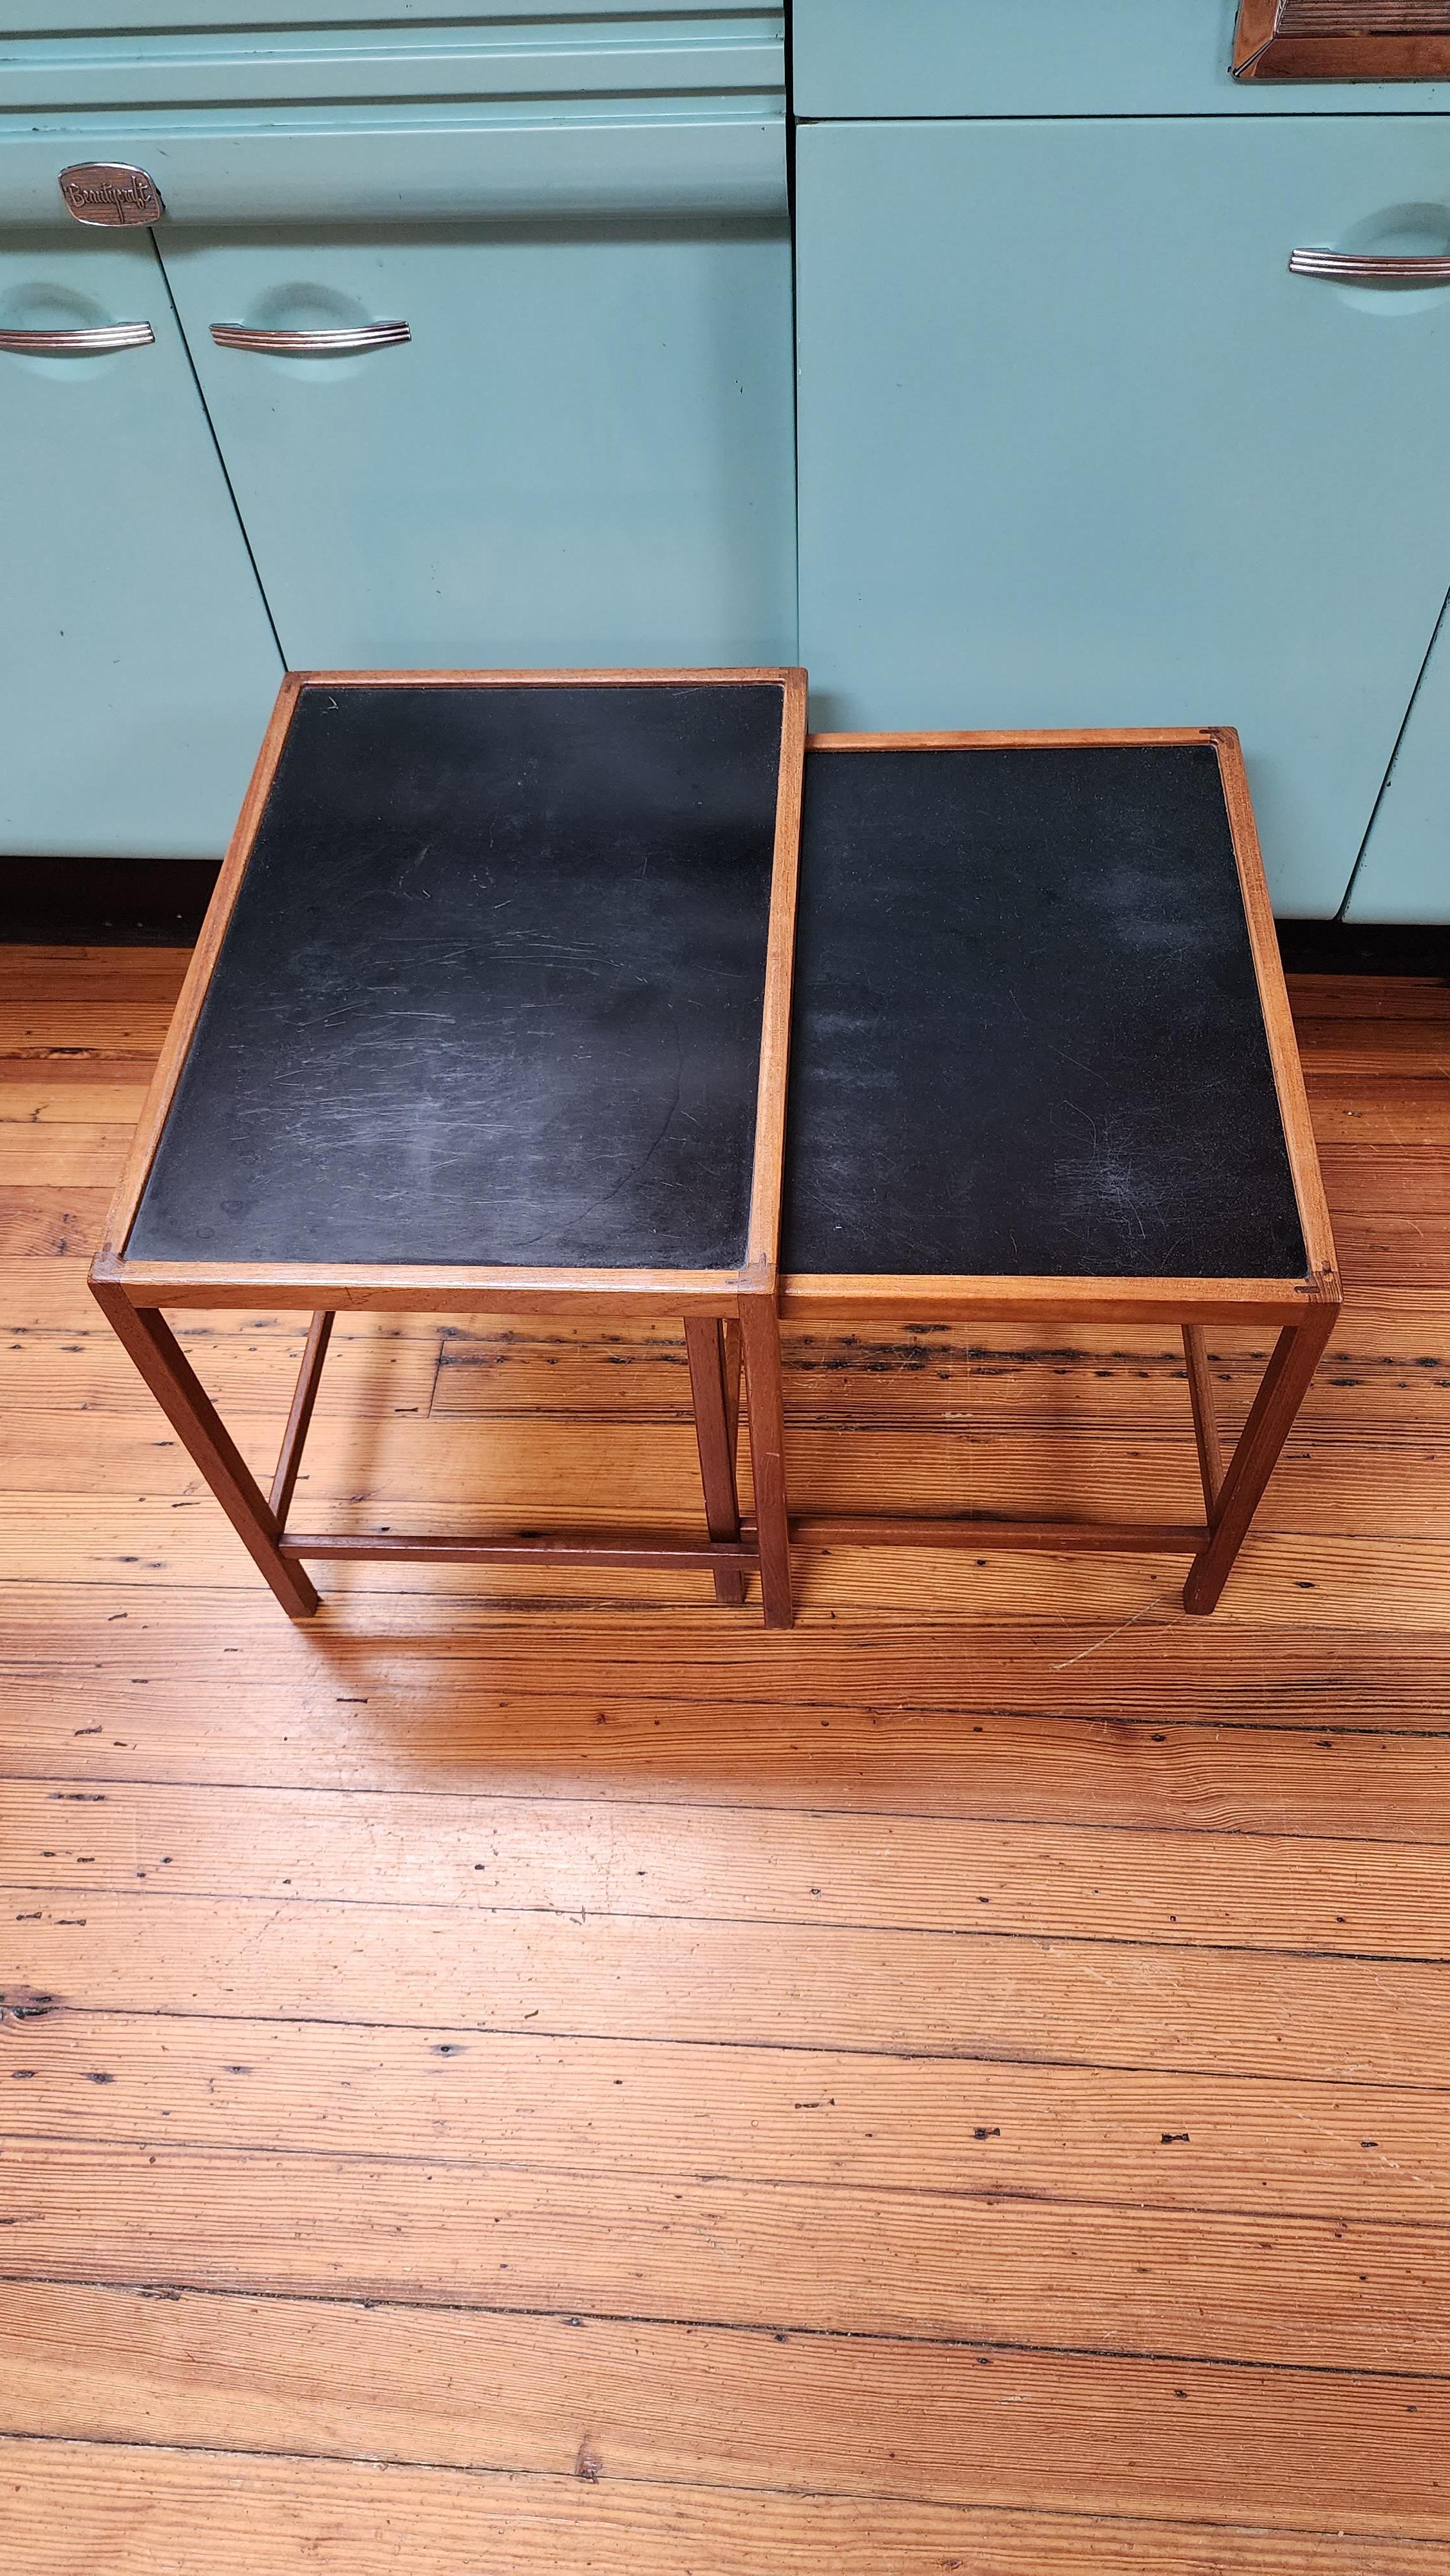 Cette paire de tables gigognes danoises en teck a été conçue par Kurt Ostervig dans les années 1950. La menuiserie d'angle est particulièrement bien exécutée, avec un assemblage à la main de type tenon et mortaise. 
Les tables s'emboîtent